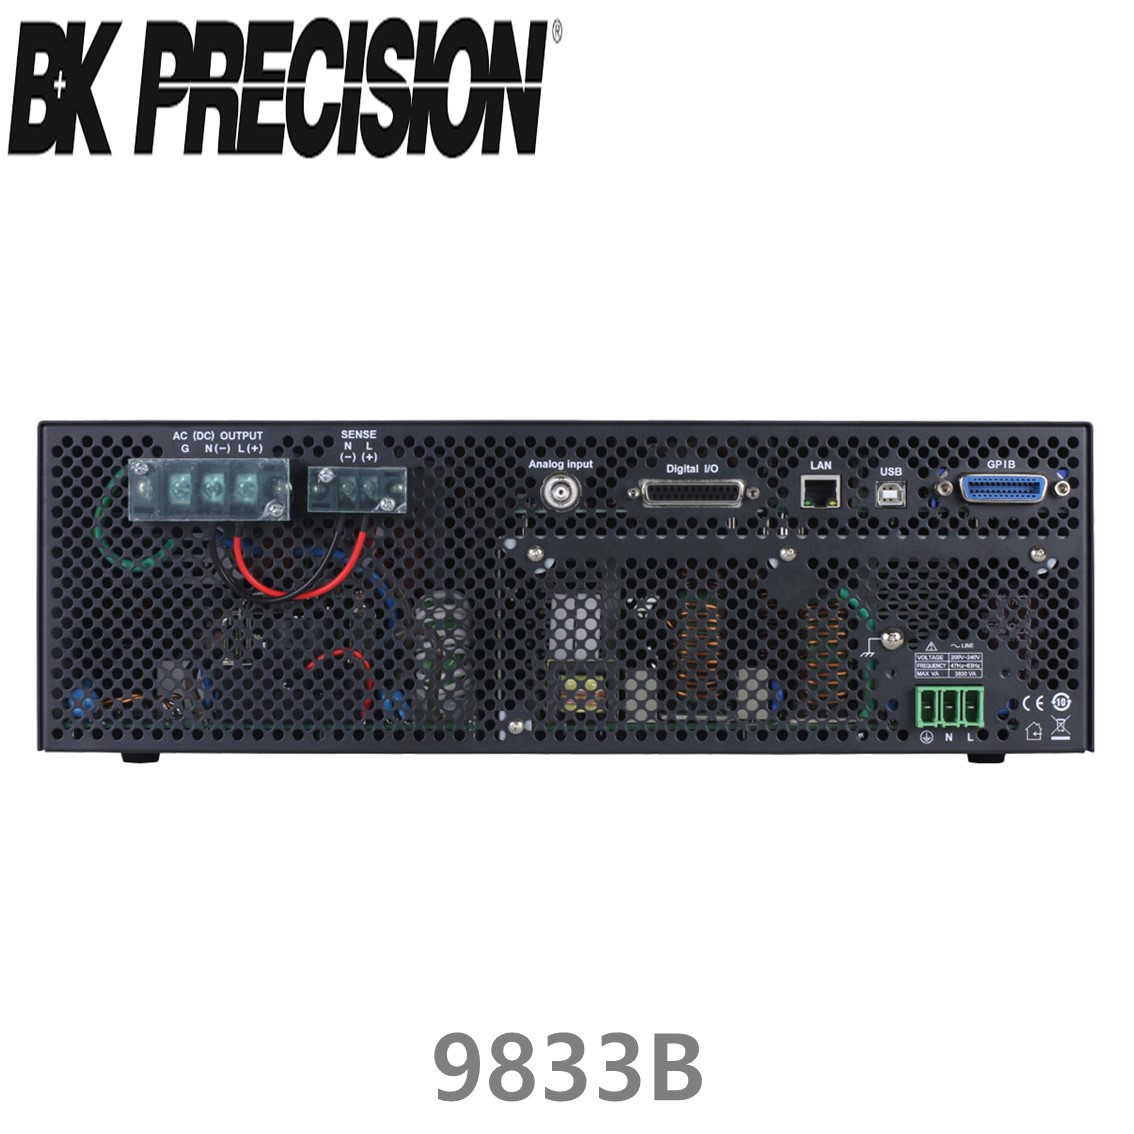 [ BK Precision ] 9833B  프로그래머블 AC파워소스 3000VA